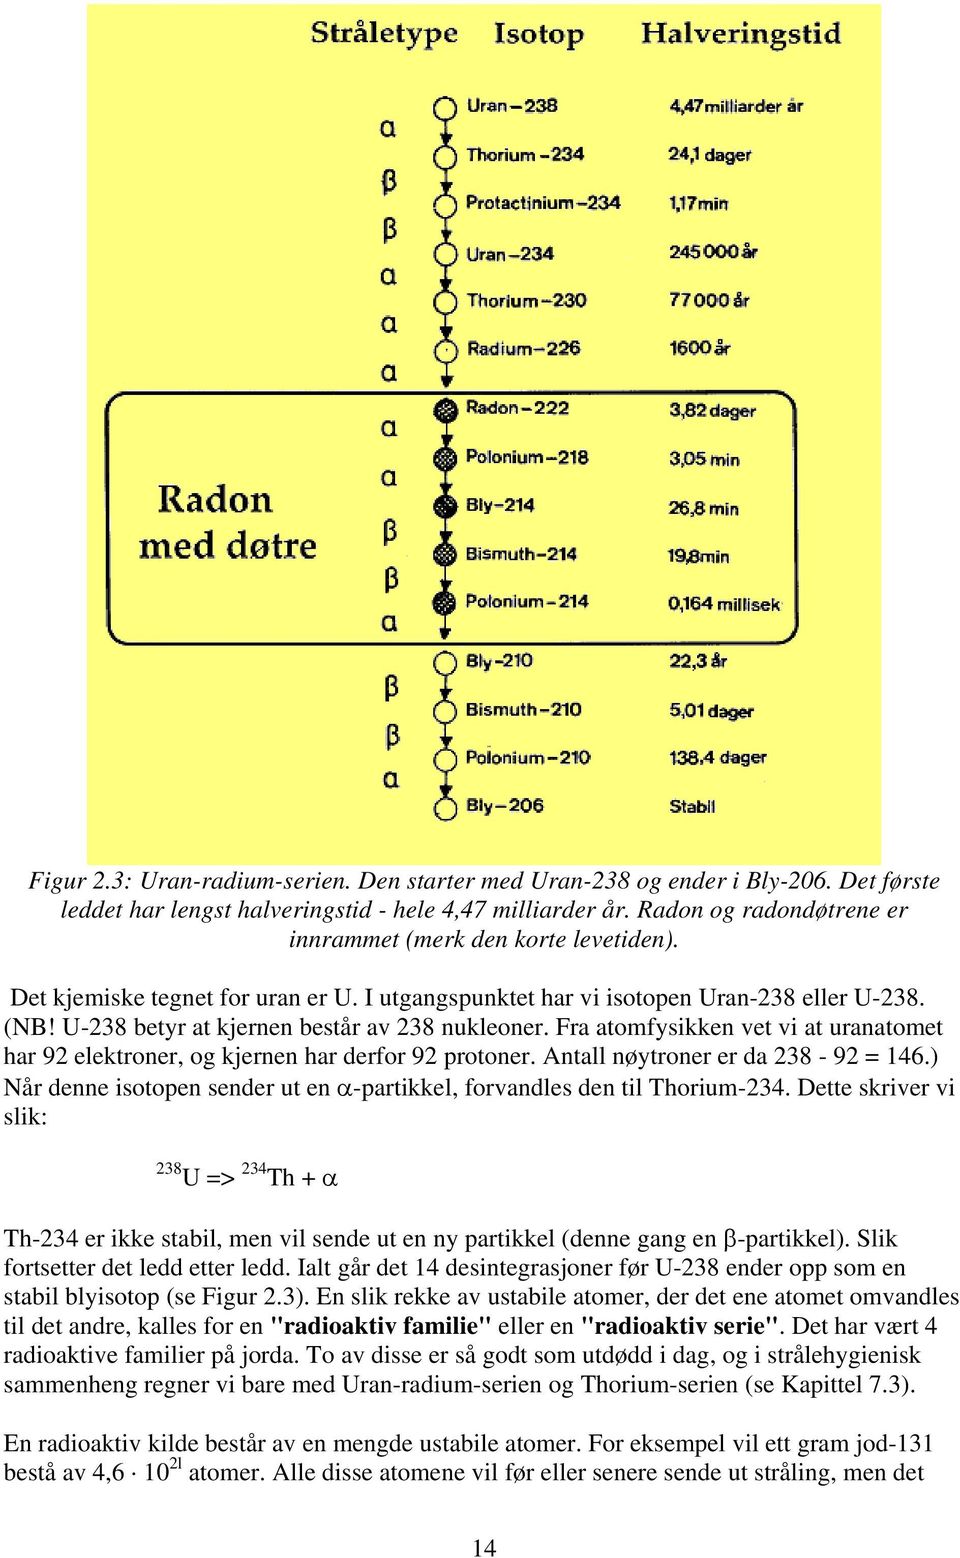 U-238 betyr at kjernen består av 238 nukleoner. Fra atomfysikken vet vi at uranatomet har 92 elektroner, og kjernen har derfor 92 protoner. Antall nøytroner er da 238-92 = 146.